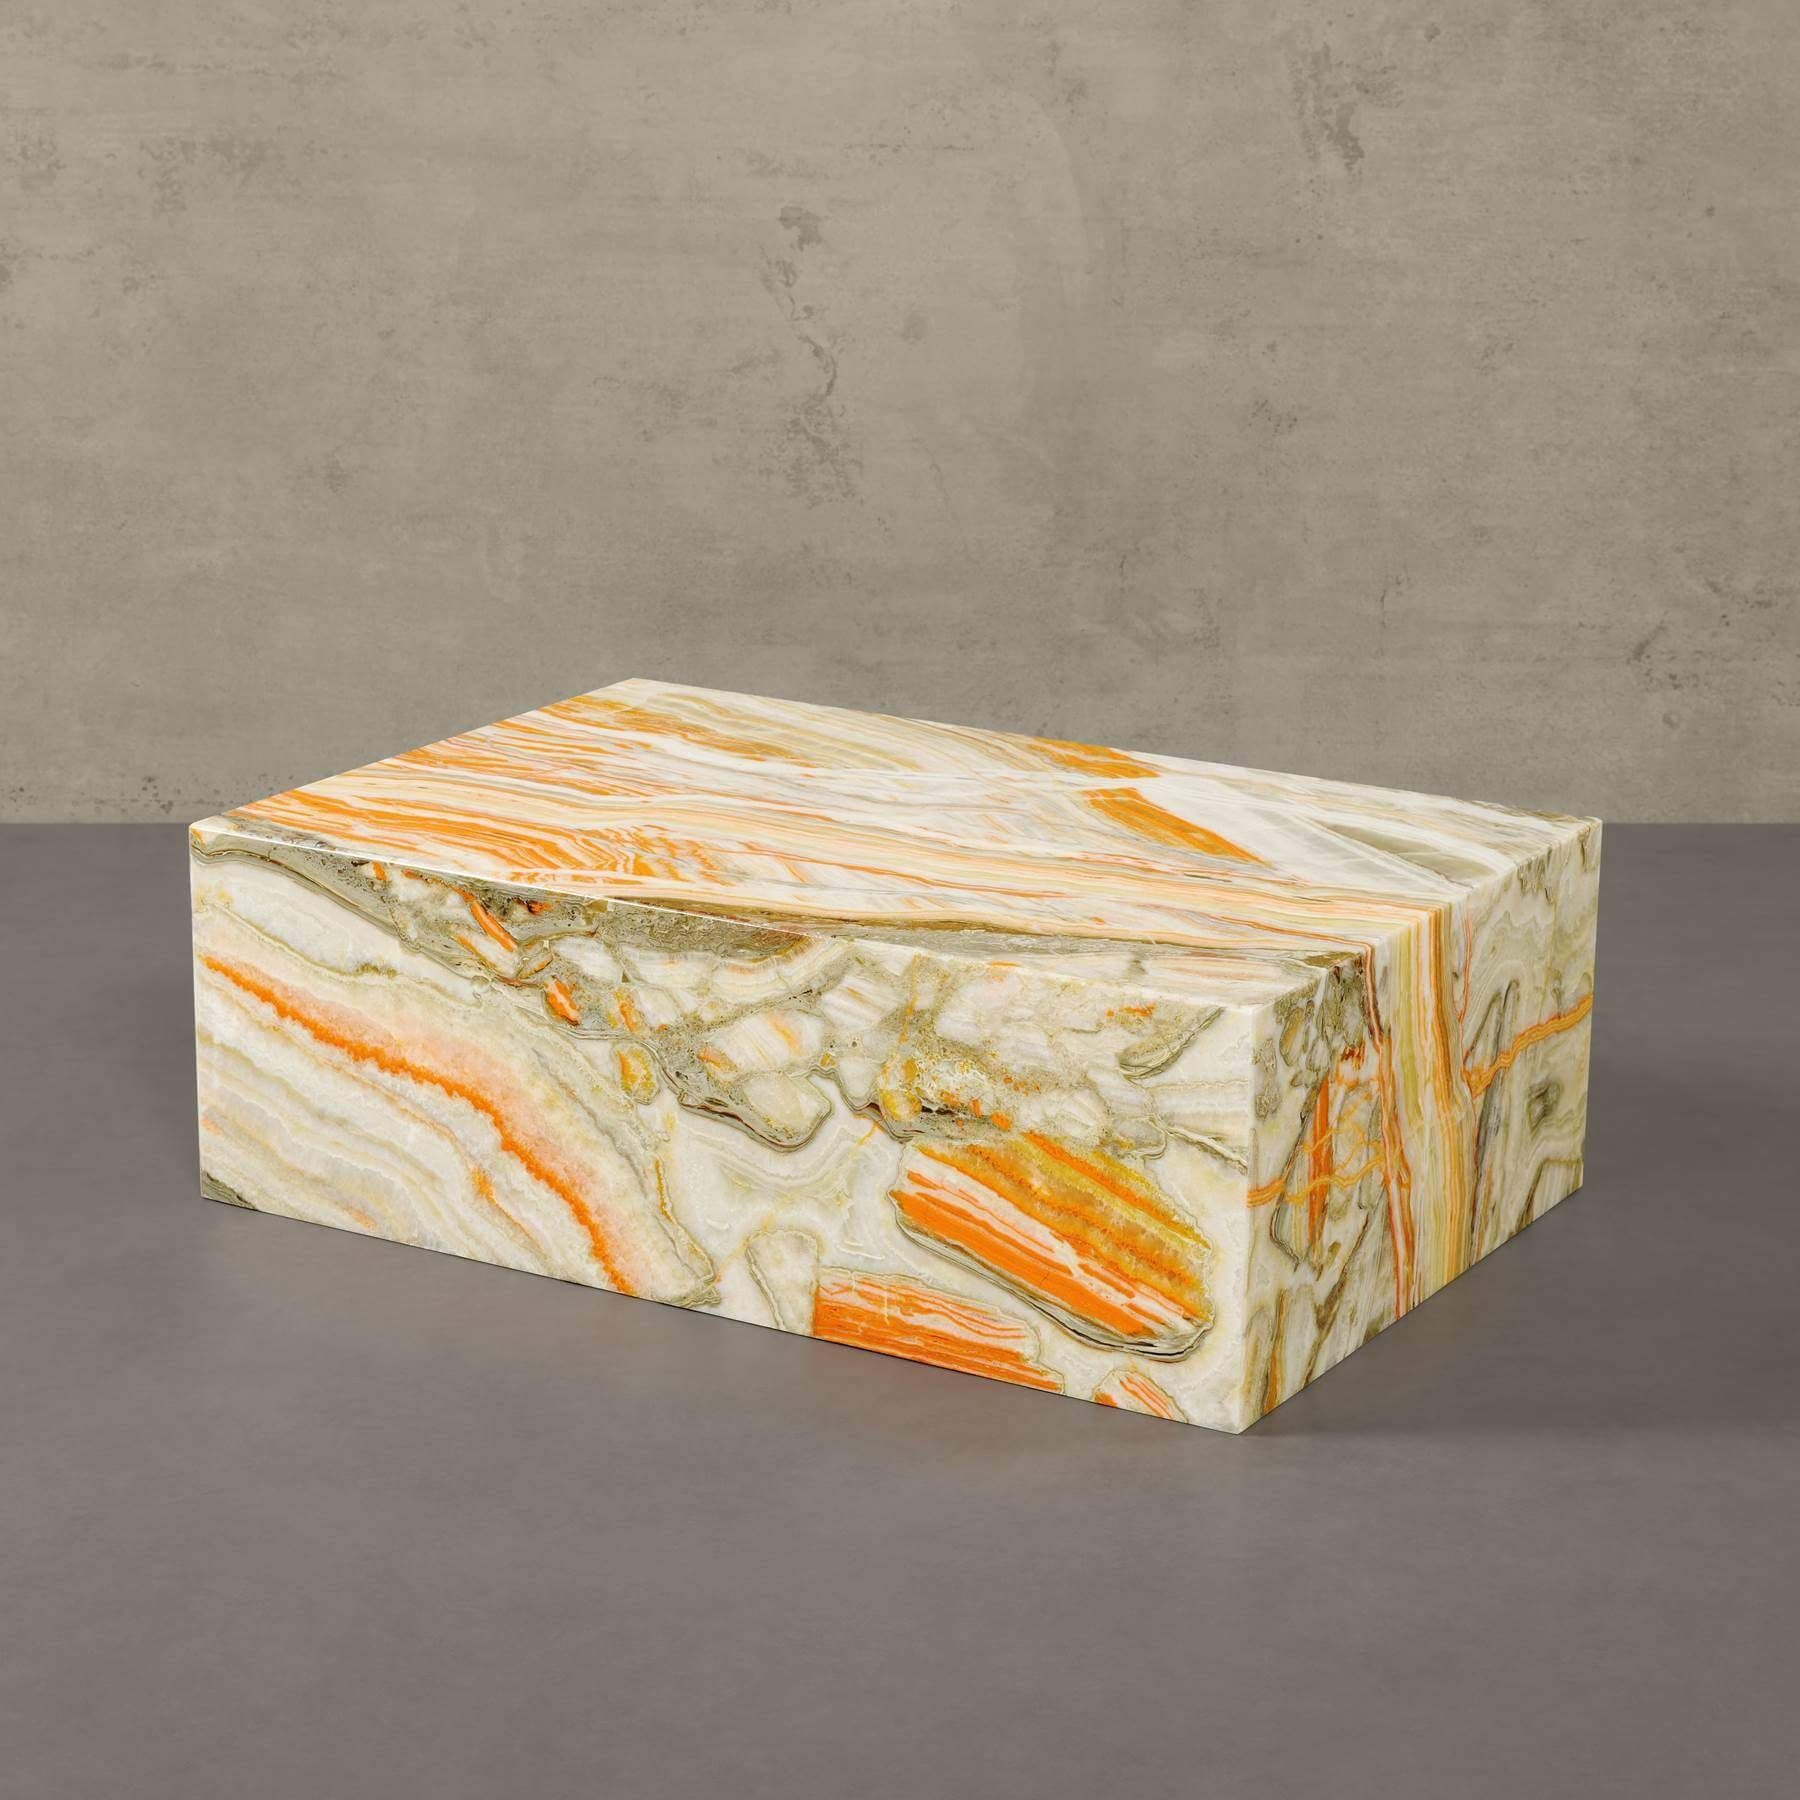 90x60x30cm echter Marmor Ablagetisch MAGNA Onyx MARMOR, Couchtisch Atelier ASPEN ECHTEM eckig, Multicolor Tisch, Beistelltisch mit